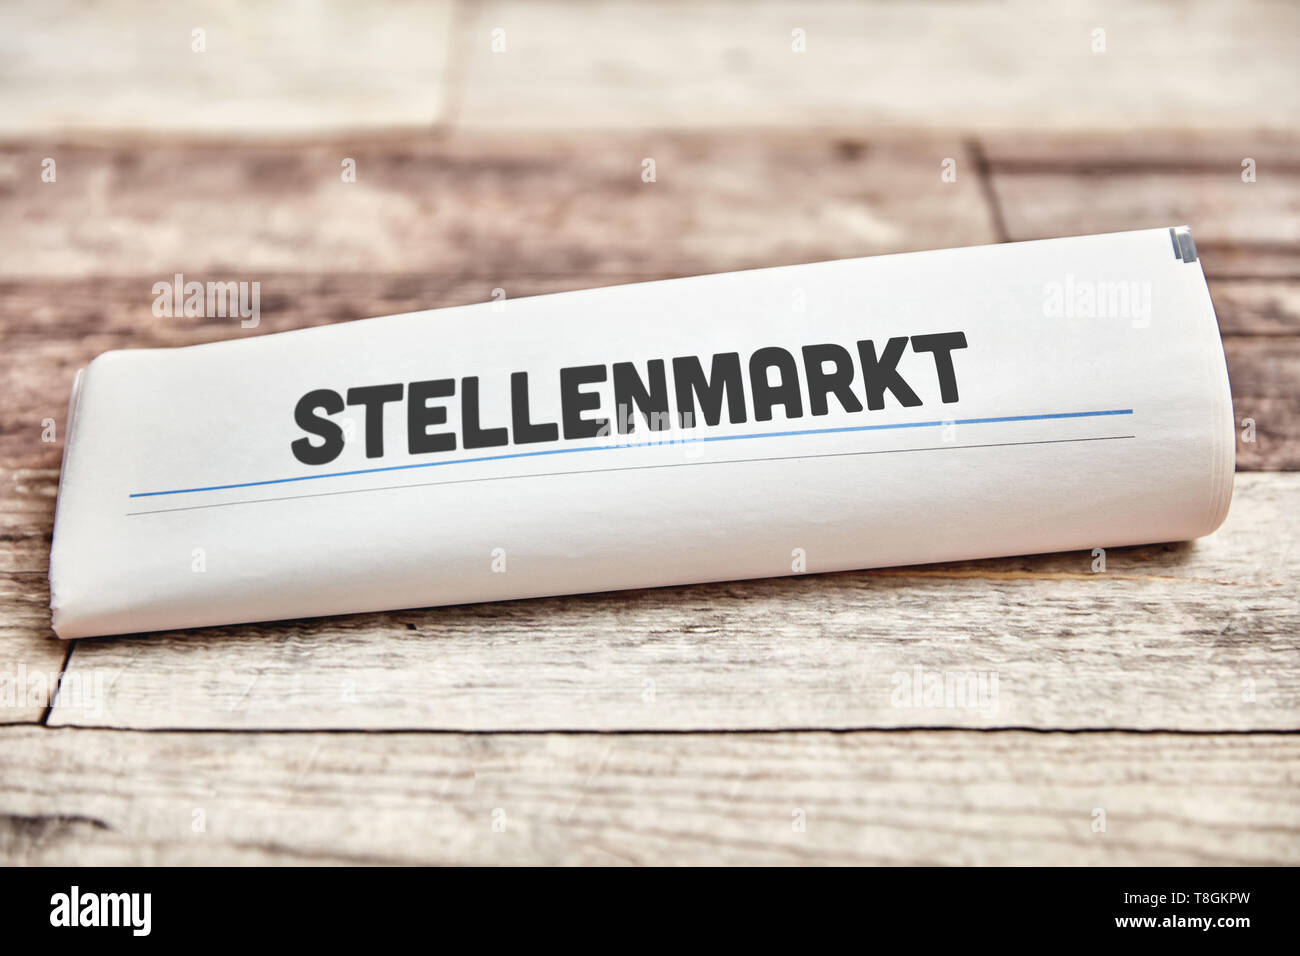 Con el periódico alemán la palabra 'Stellenmarkt' (mercado de trabajo) en la primera página Foto de stock